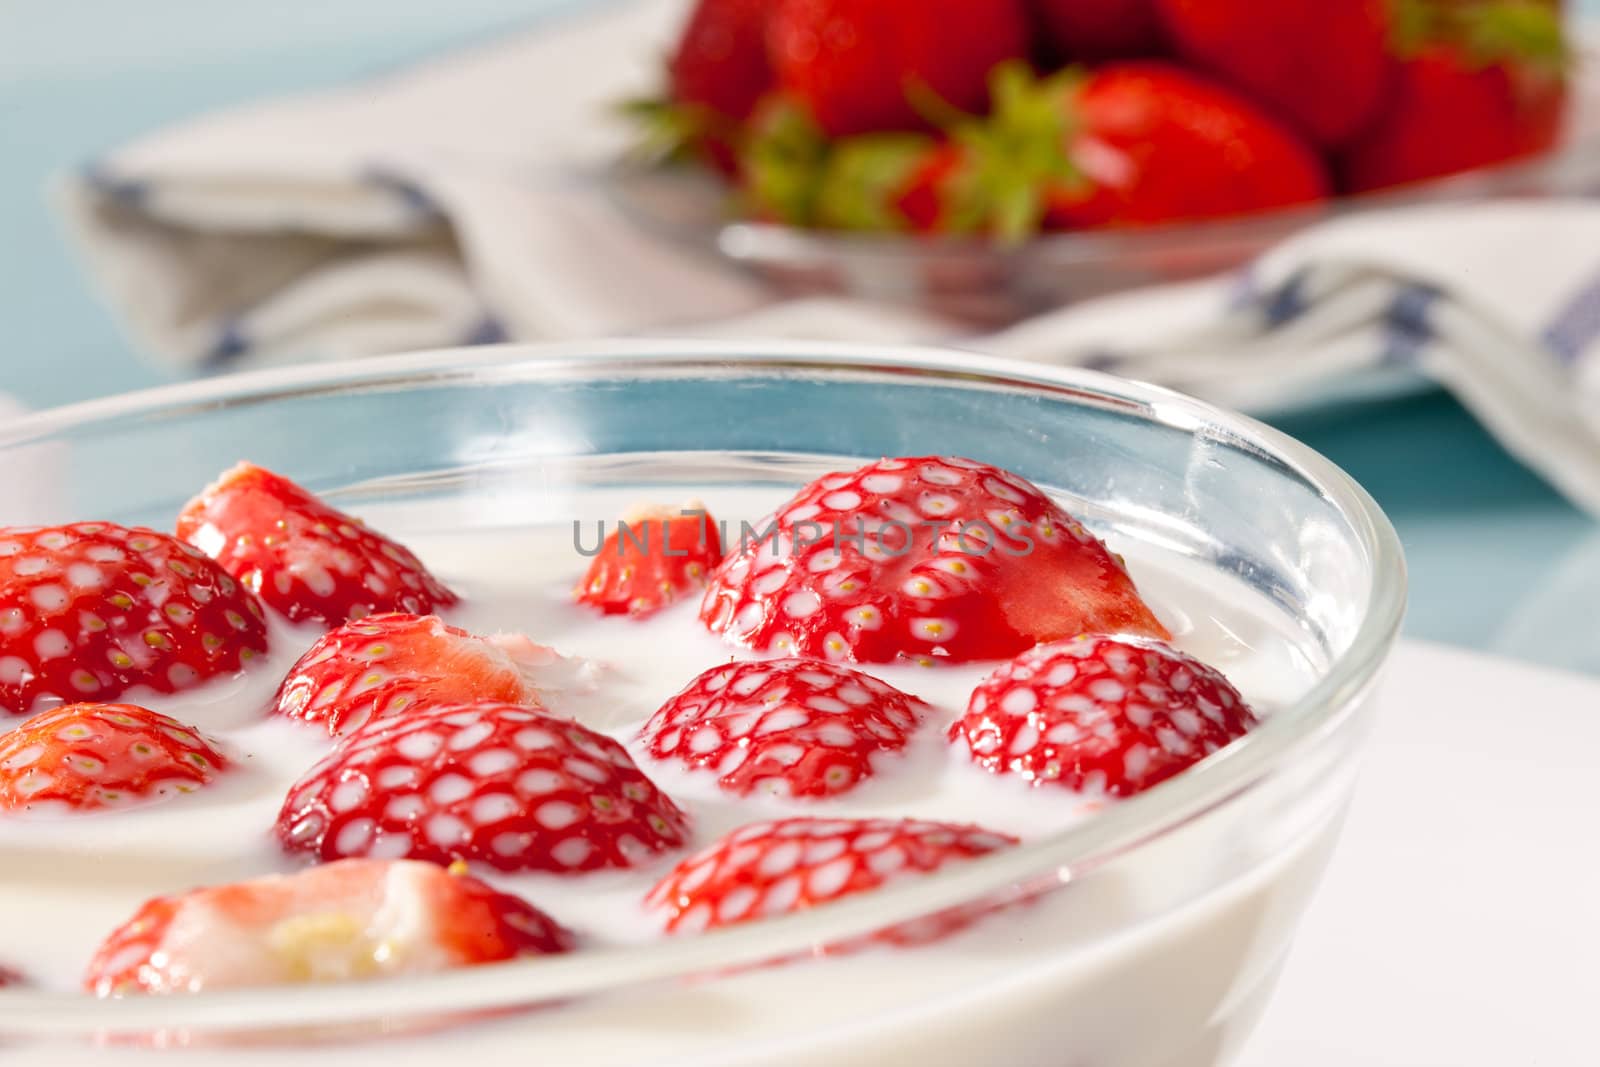 strawberry dessert by agg